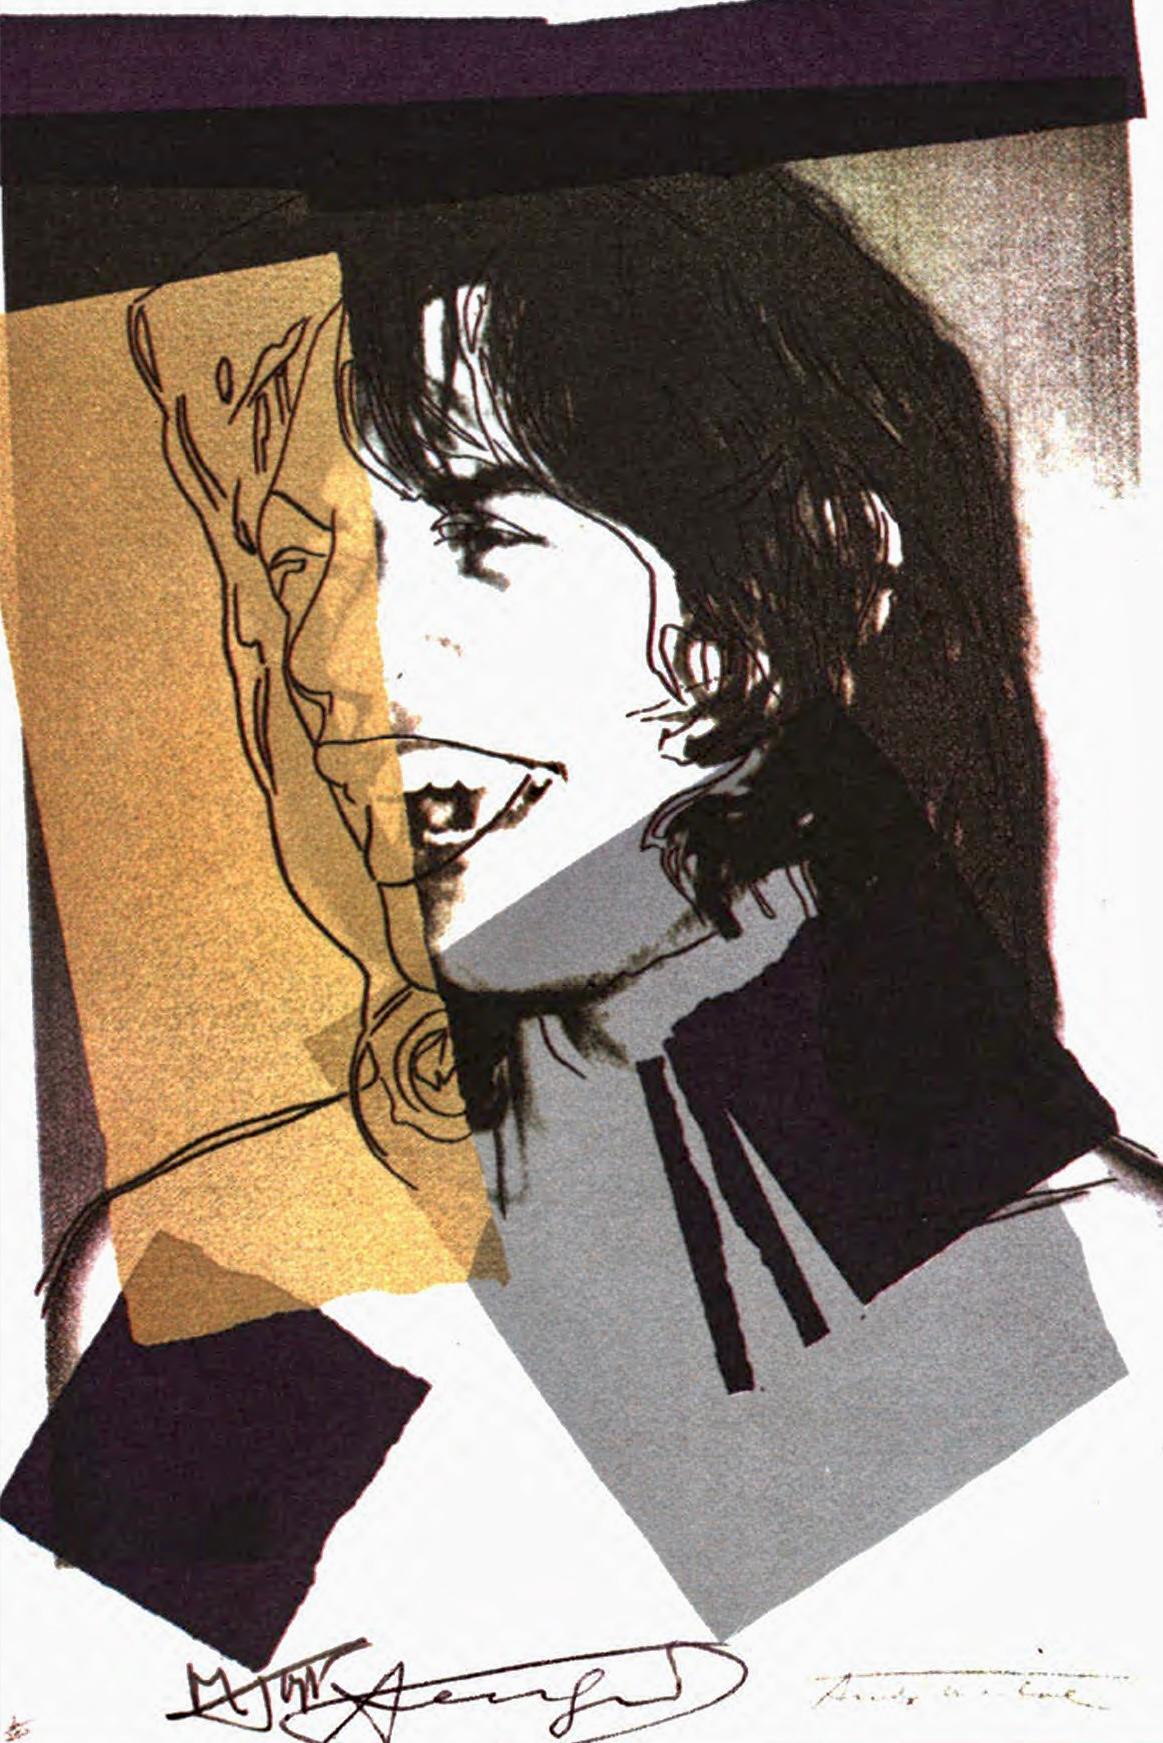 Andy Warhol Mick Jagger Leo Castelli Galerie 1975:

Eine atemberaubende Andy Warhol Mick Jagger Ankündigung Karte Hand von Warhol in Marker auf der unteren Mitte (zwischen einem Jagger & Warhol gedruckt Signatur) unterzeichnet. Dieses Werk wurde